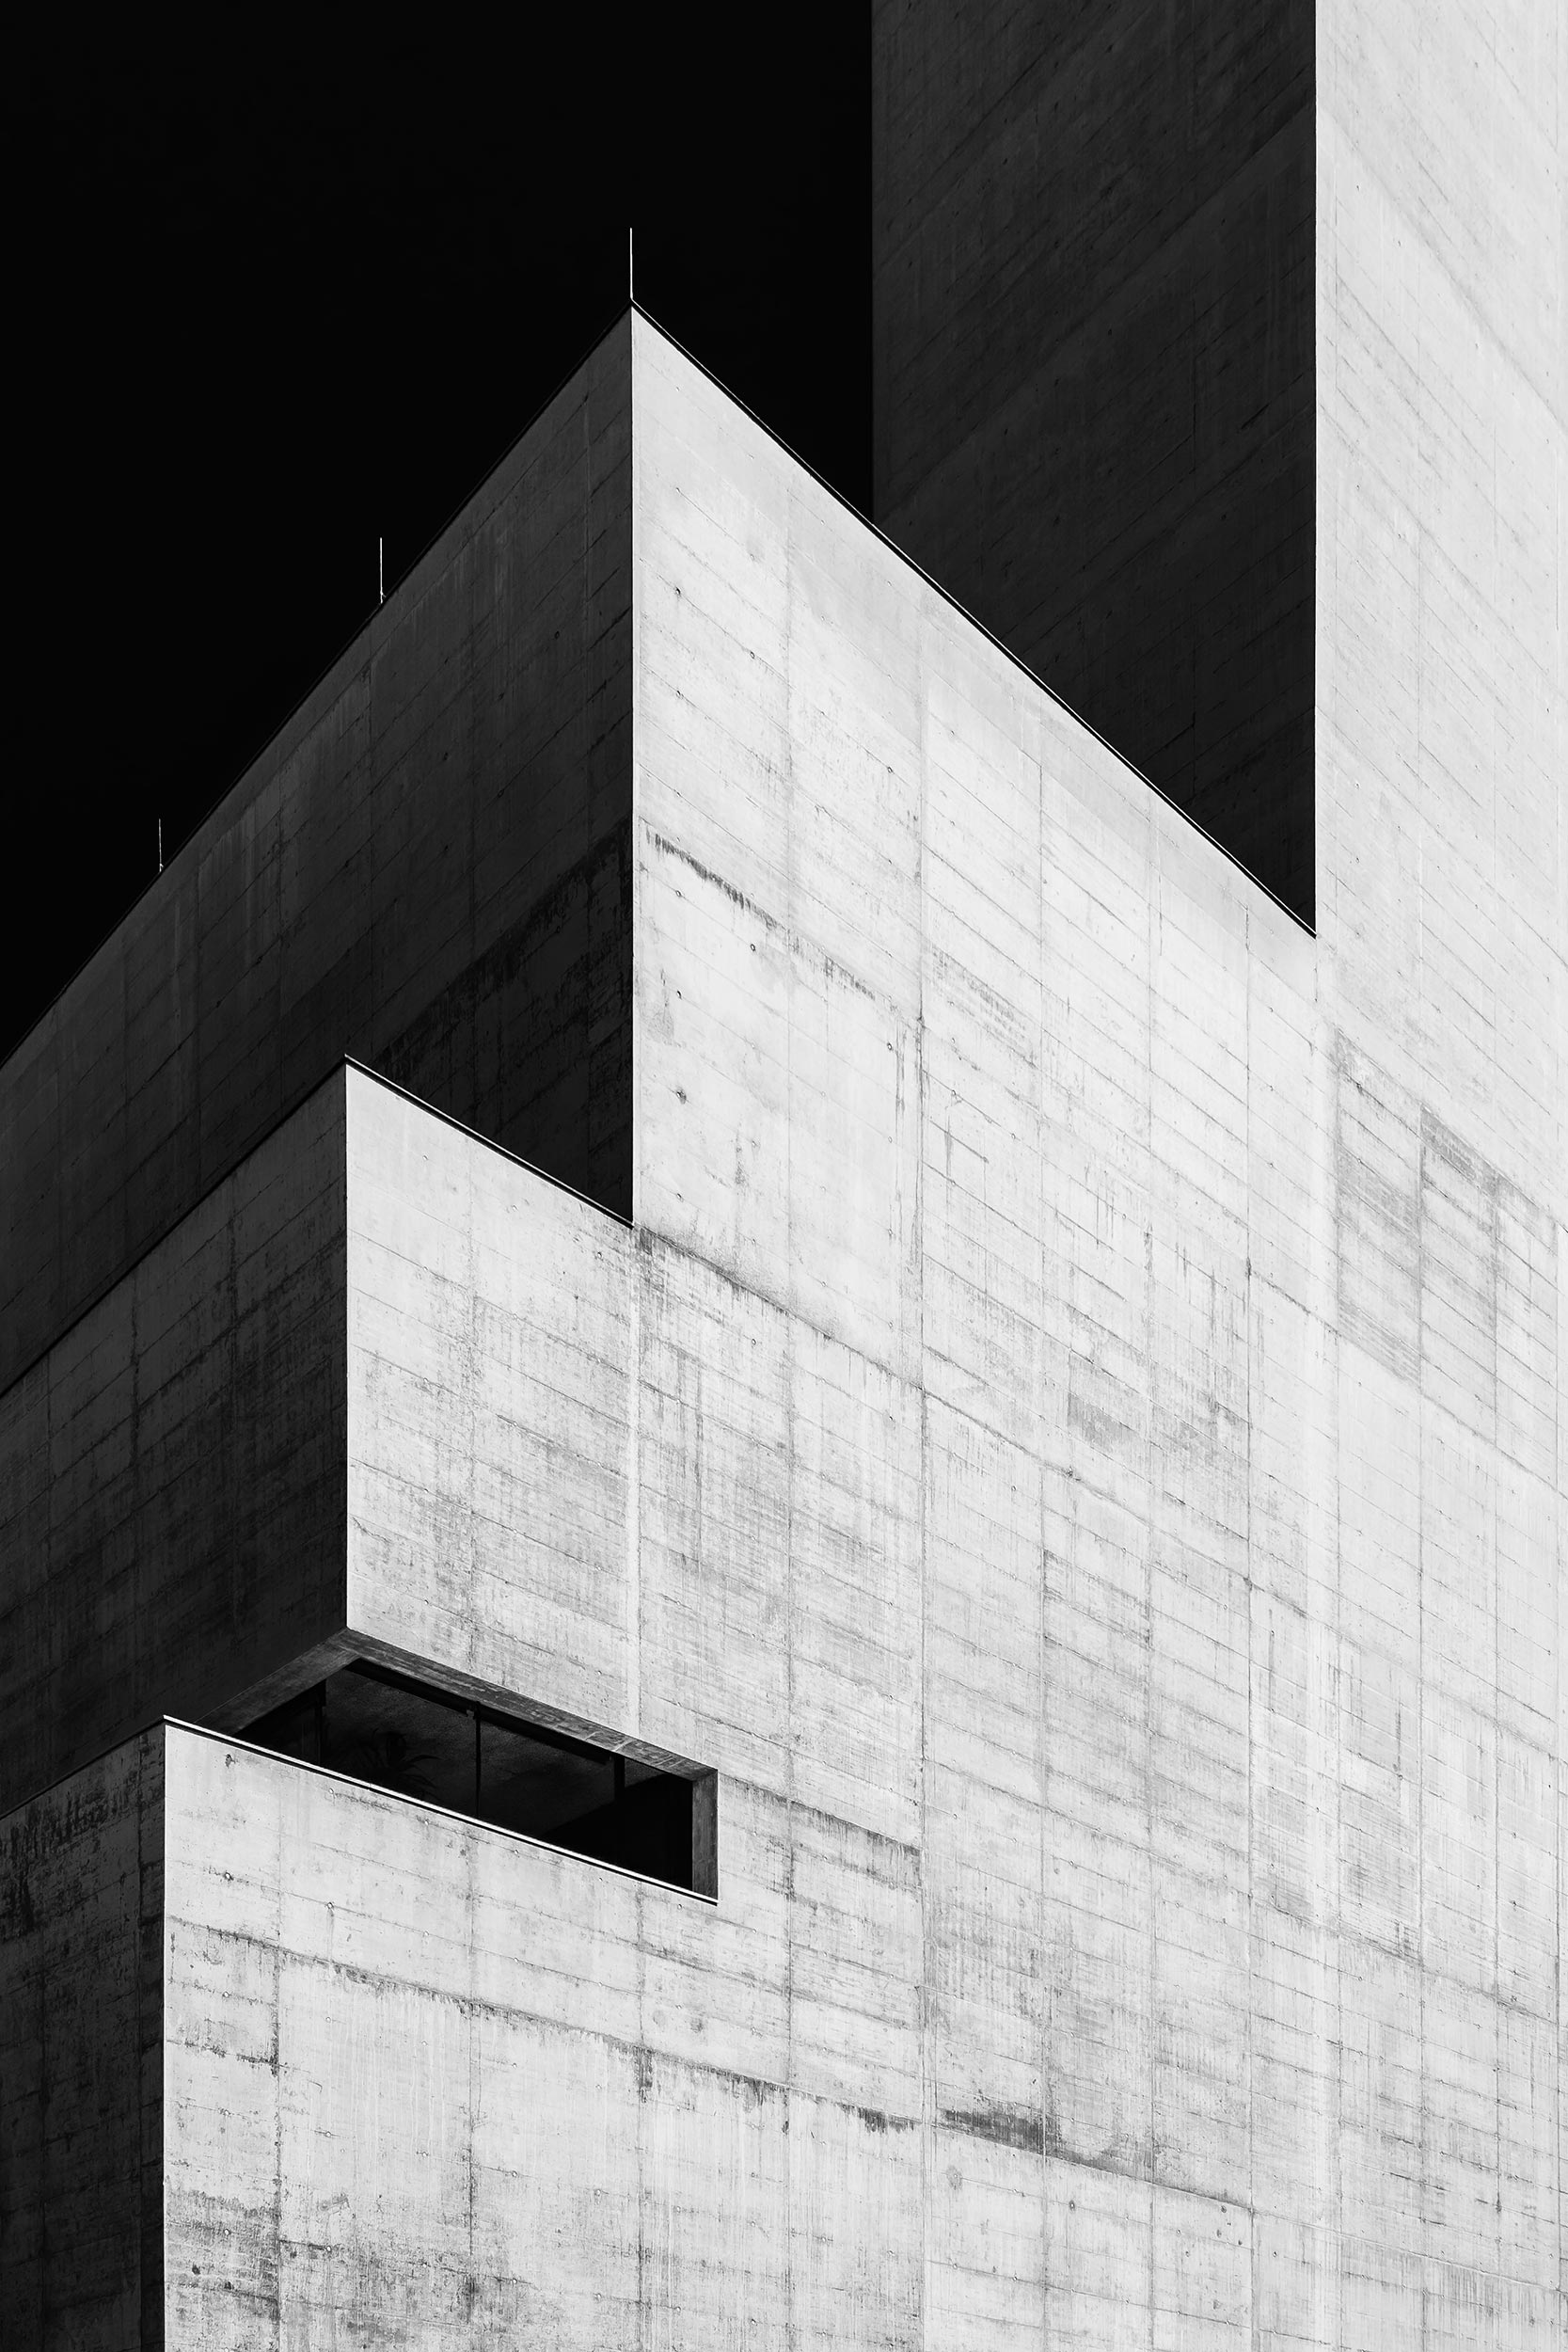 Heizkraftwerk Mitte, Salzburg, Architecture Photography, Black & White